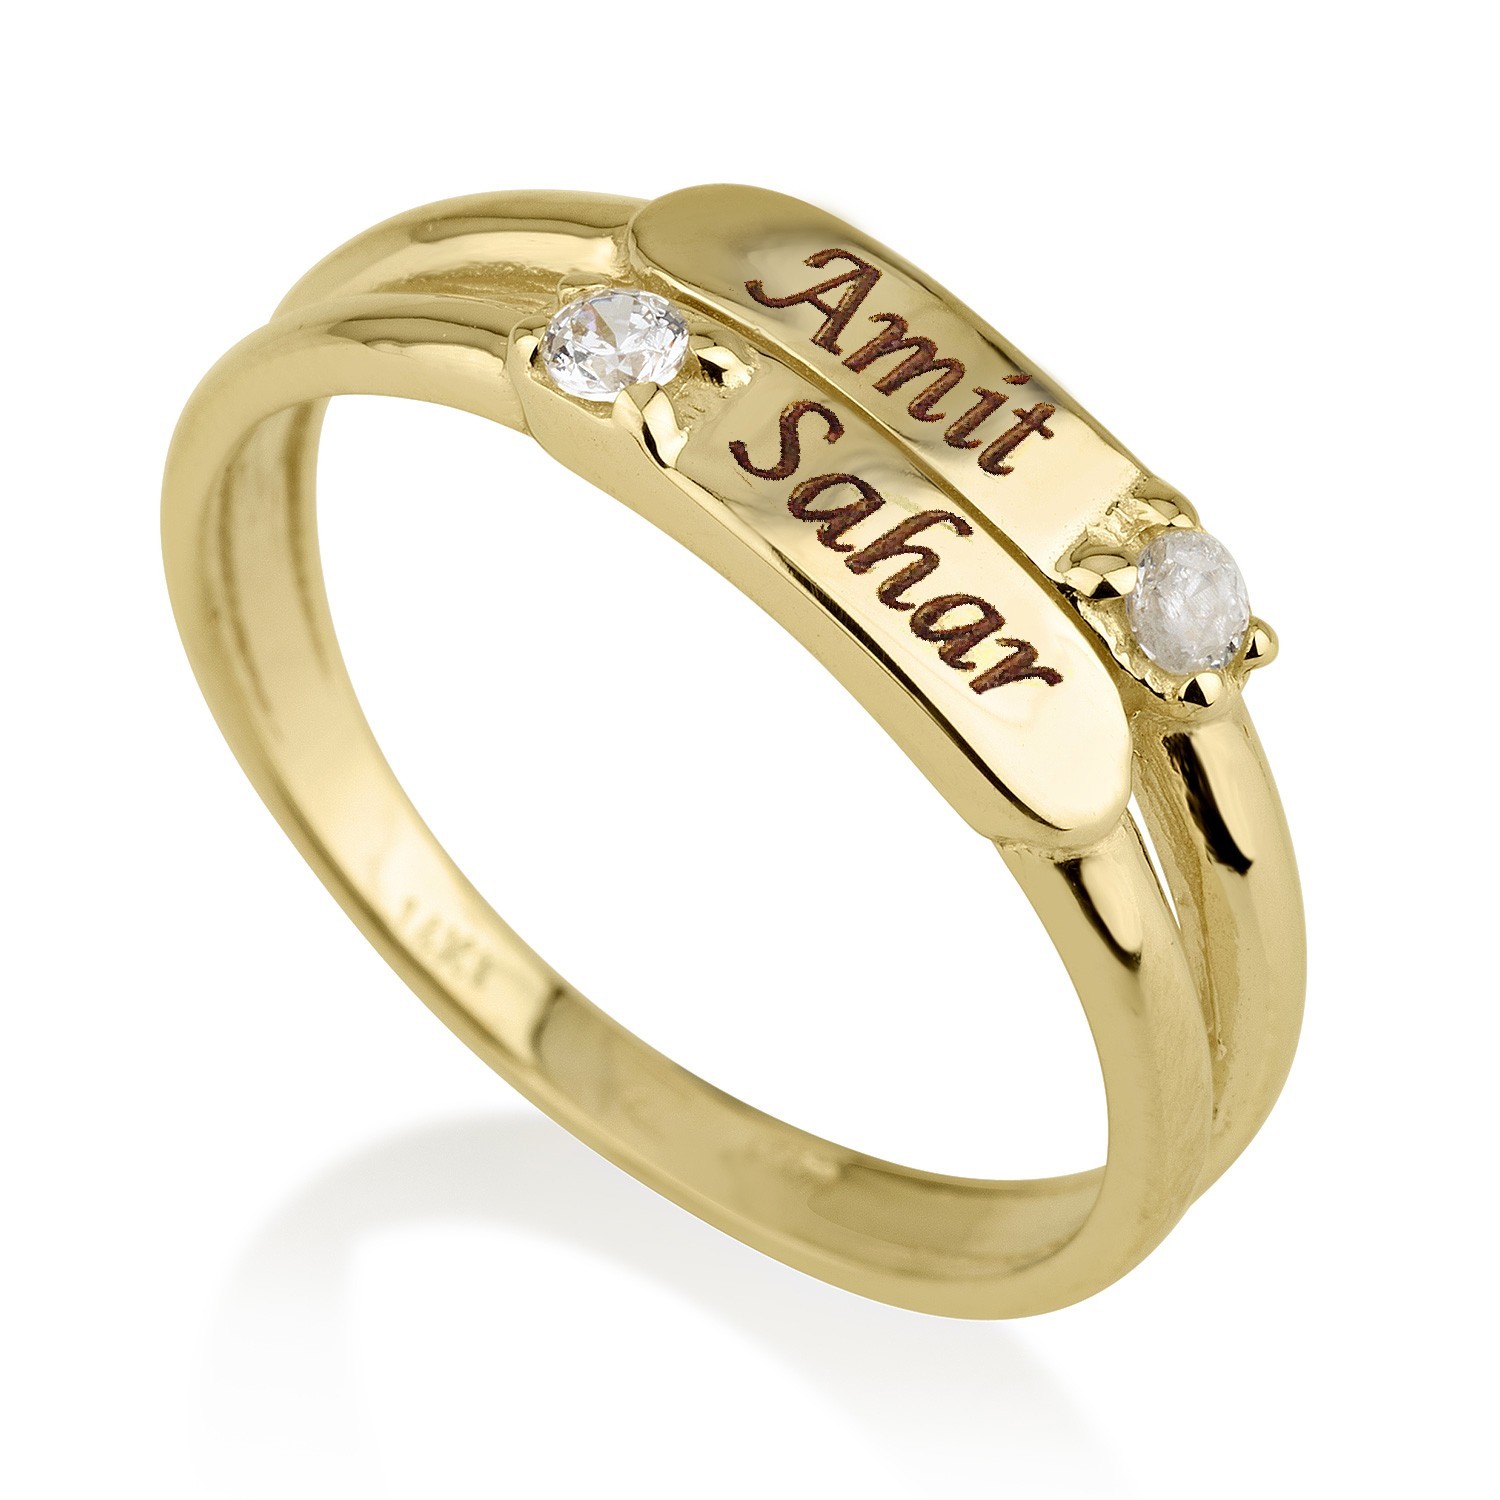  טבעת חריטה 2 פסים - זהב אמיתי 14 קראט בשיבוץ יהלומים אמיתיים טבעיים דגם 3122